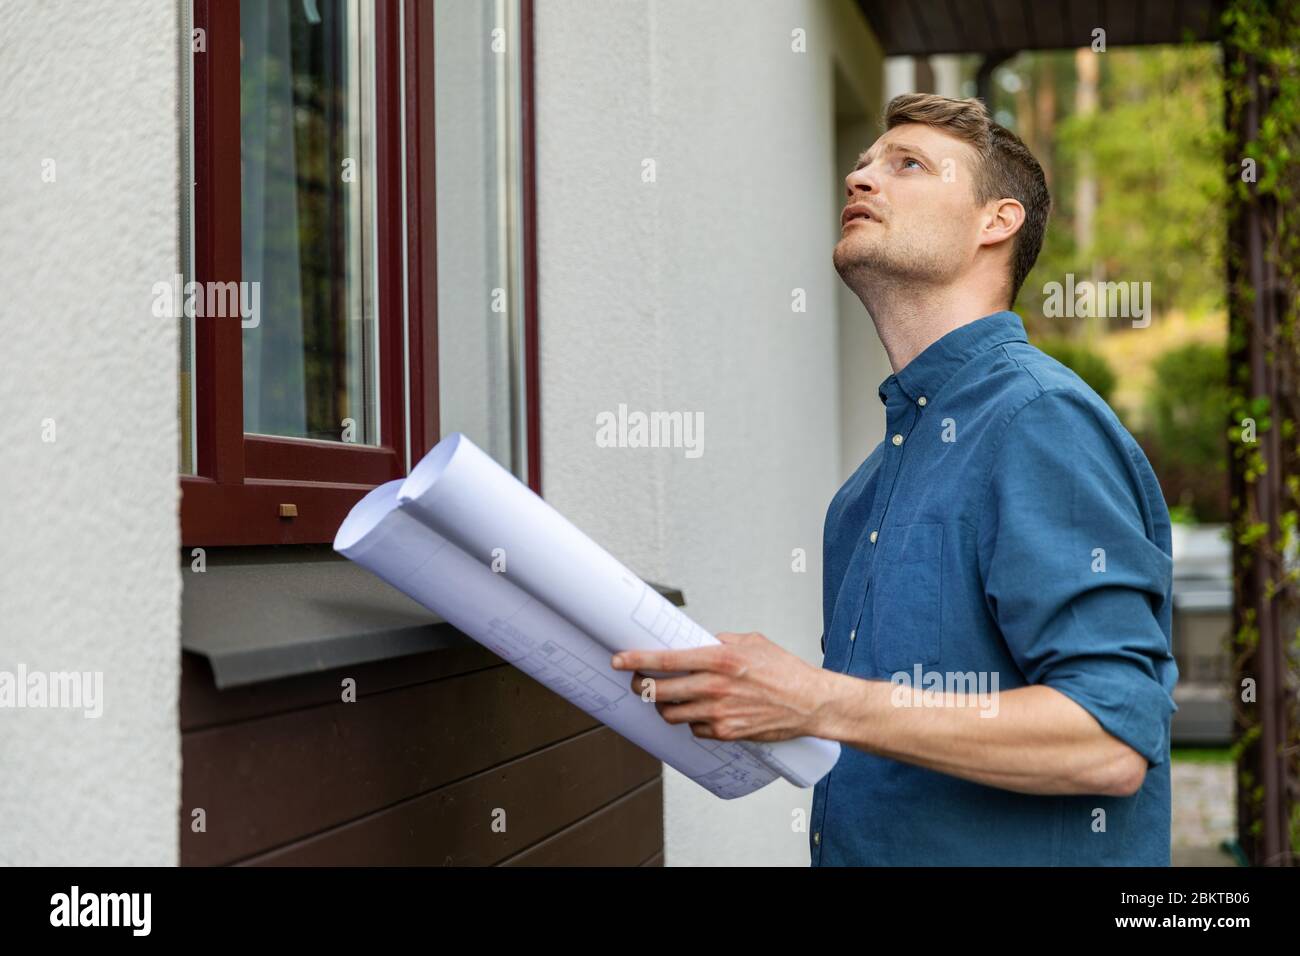 valoración de bienes raíces - hombre haciendo inspección de propiedades al aire libre Foto de stock